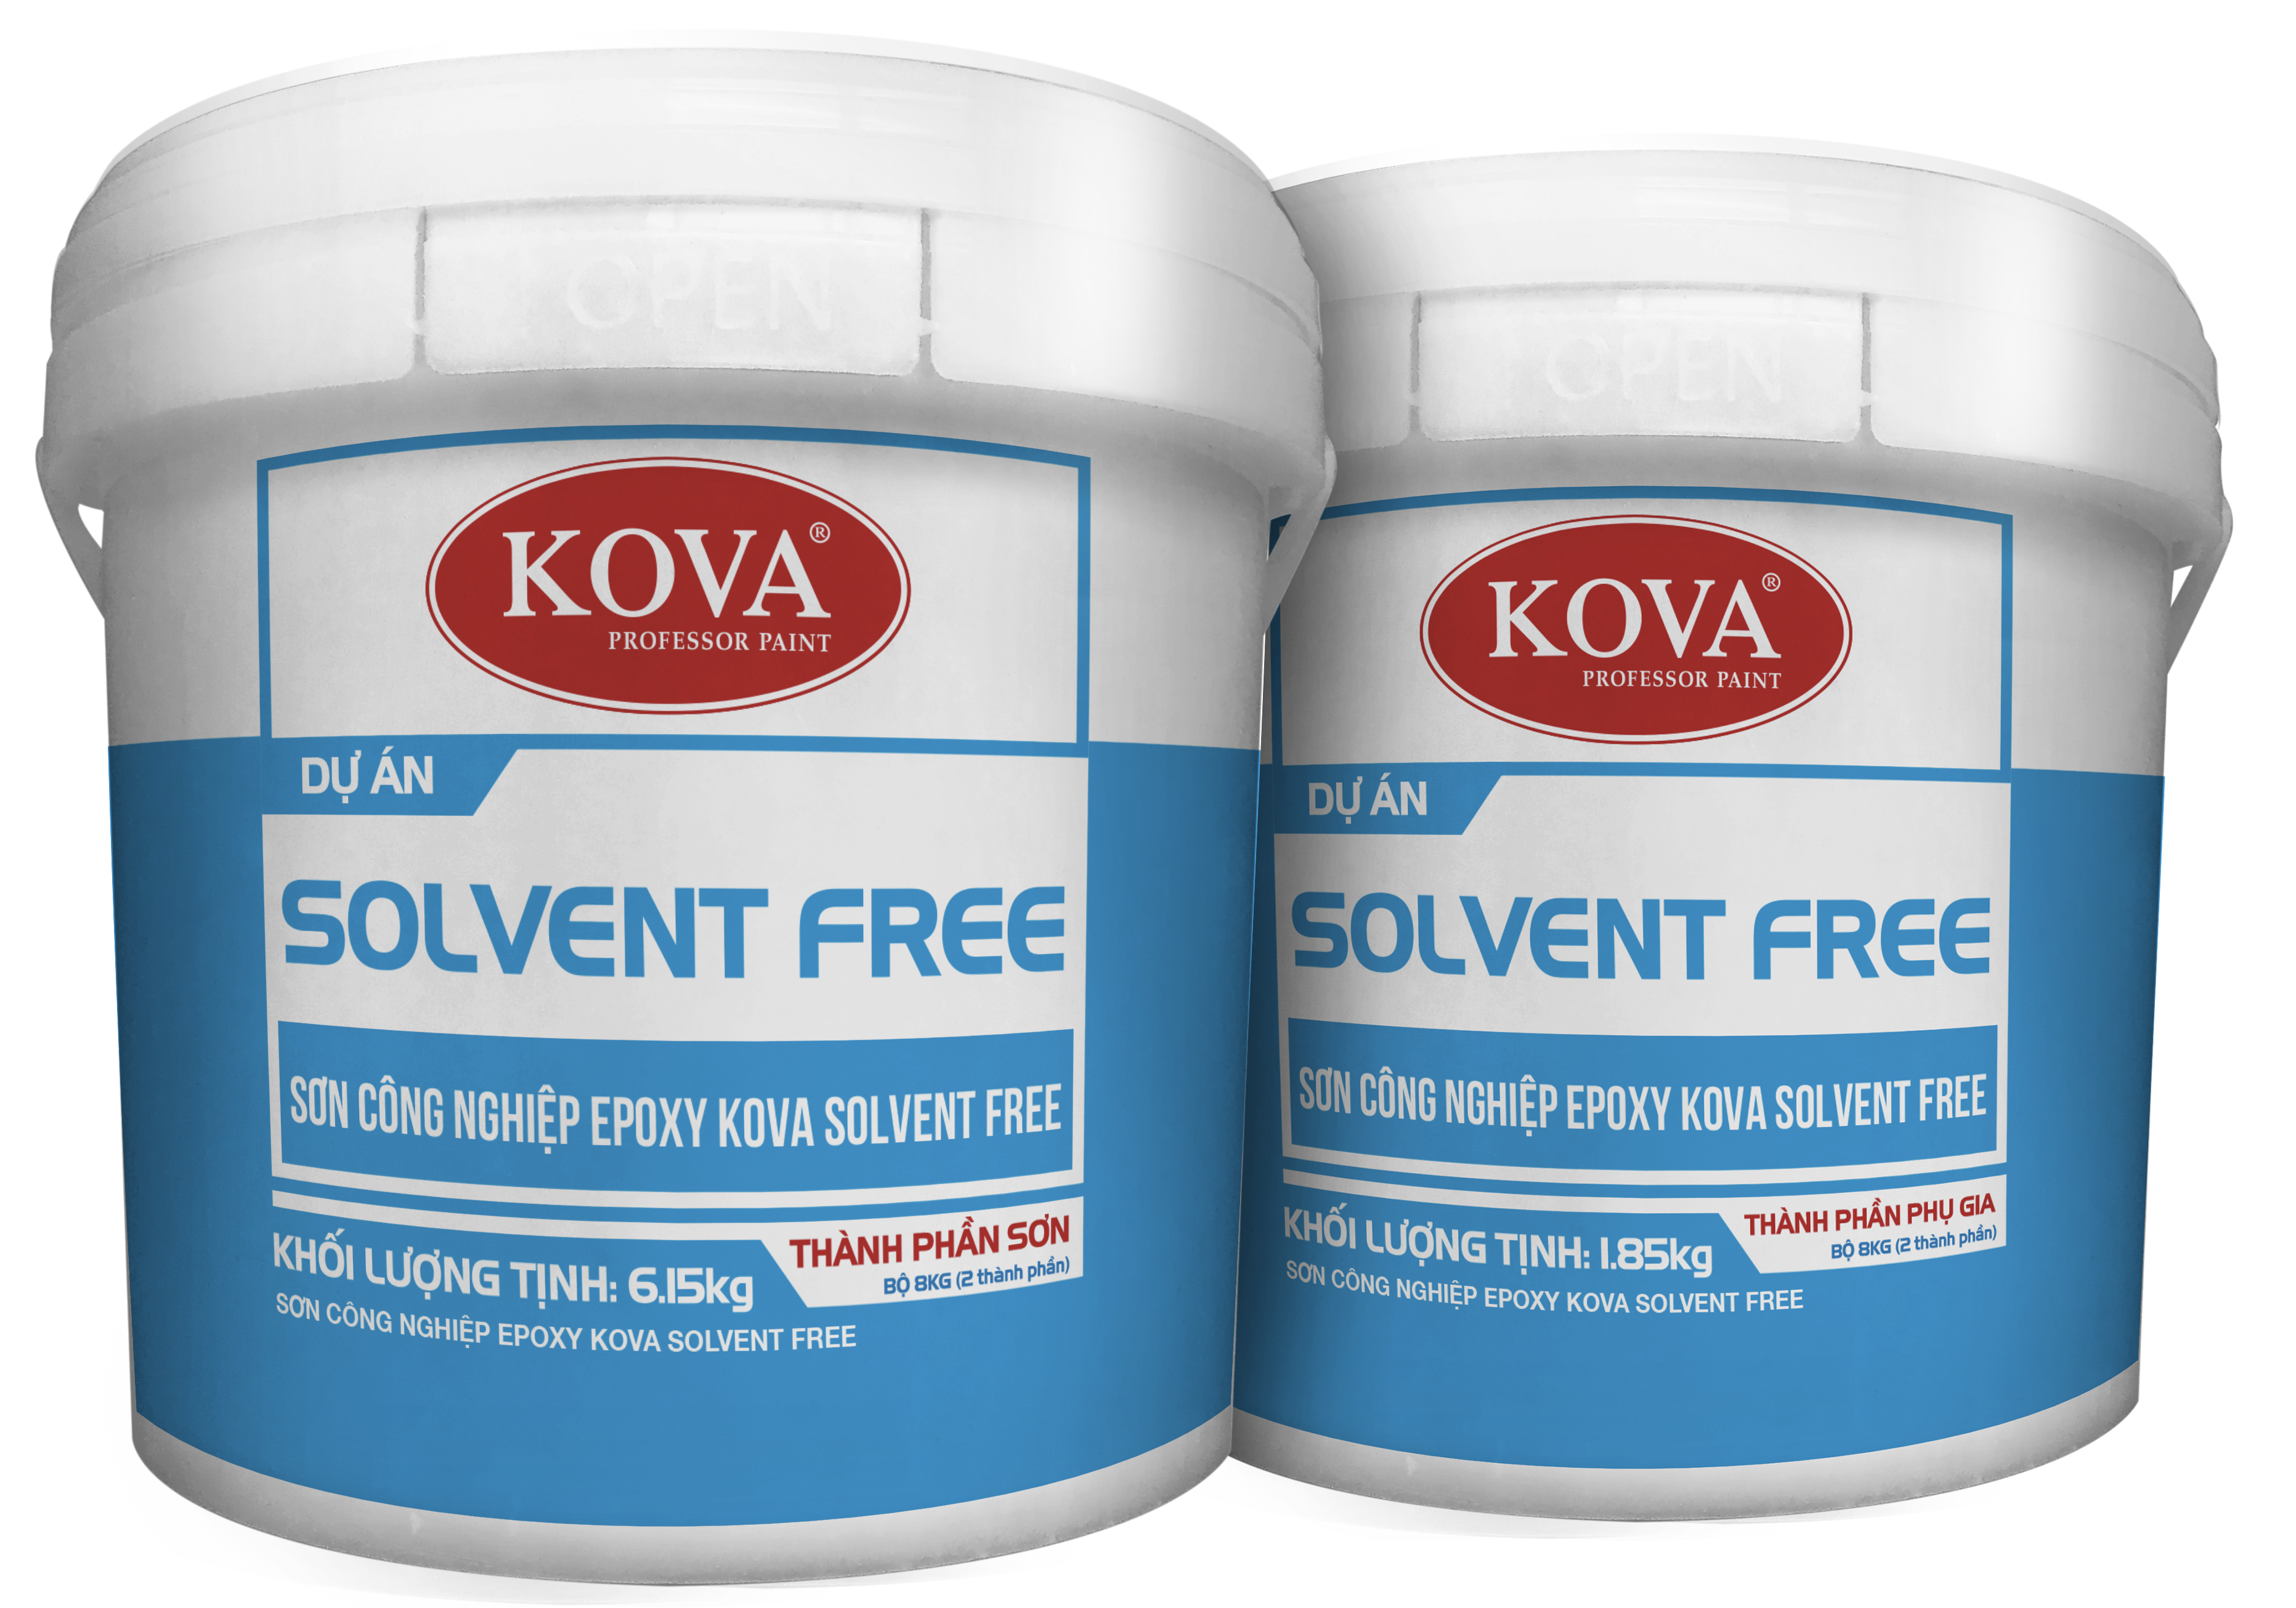 Sơn Công Nghiệp Epoxy KOVA Solvent Free là sản phẩm không gây ô nhiễm môi trường và an toàn cho sức khỏe con người. Hãy xem hình ảnh liên quan để hiểu rõ hơn về sản phẩm này và tìm kiếm sự lựa chọn tốt nhất cho công trình của bạn!